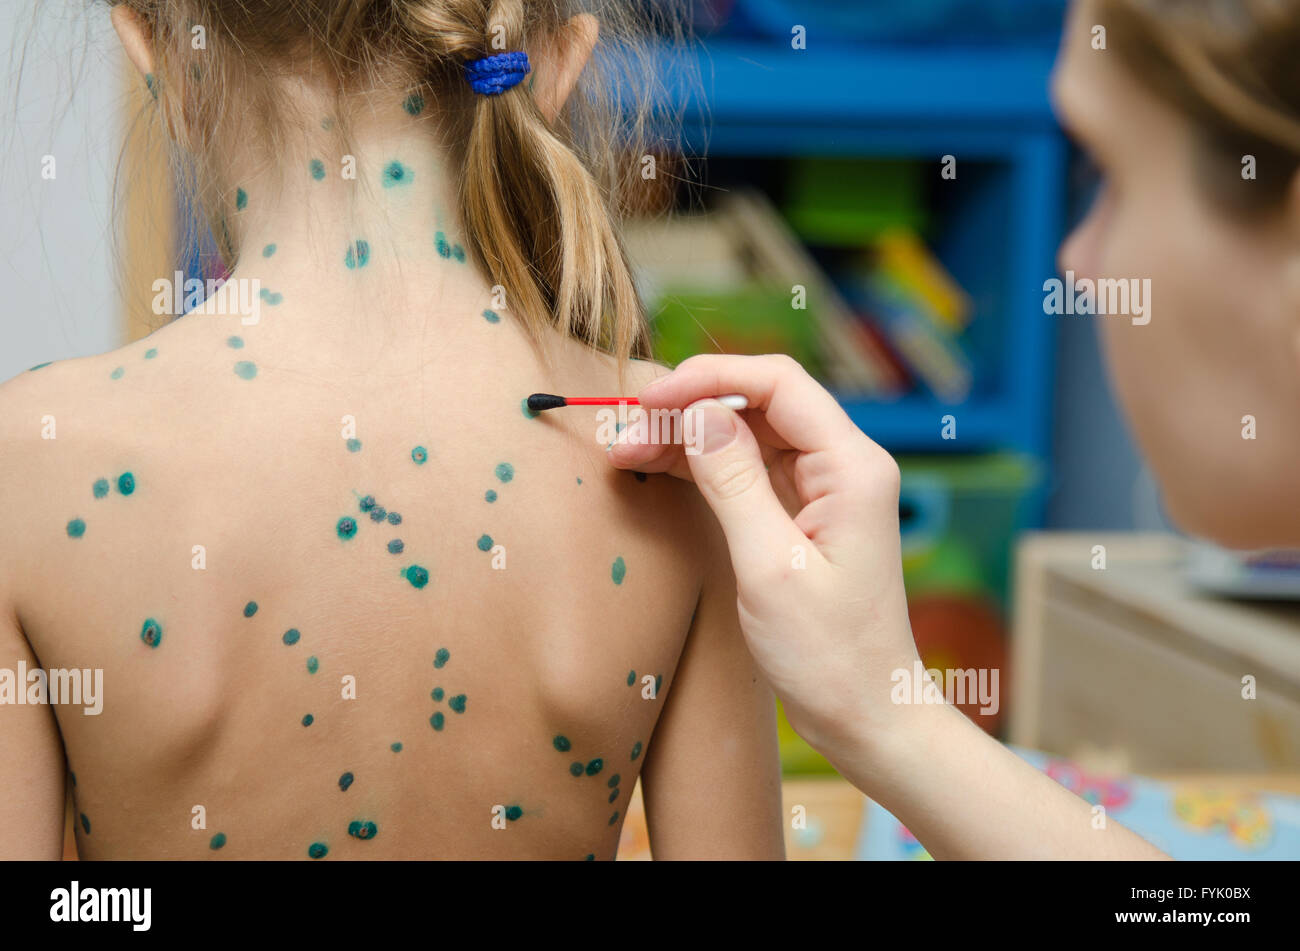 Lubrication zelenkoj chickenpox sores on back of a little girl Stock Photo